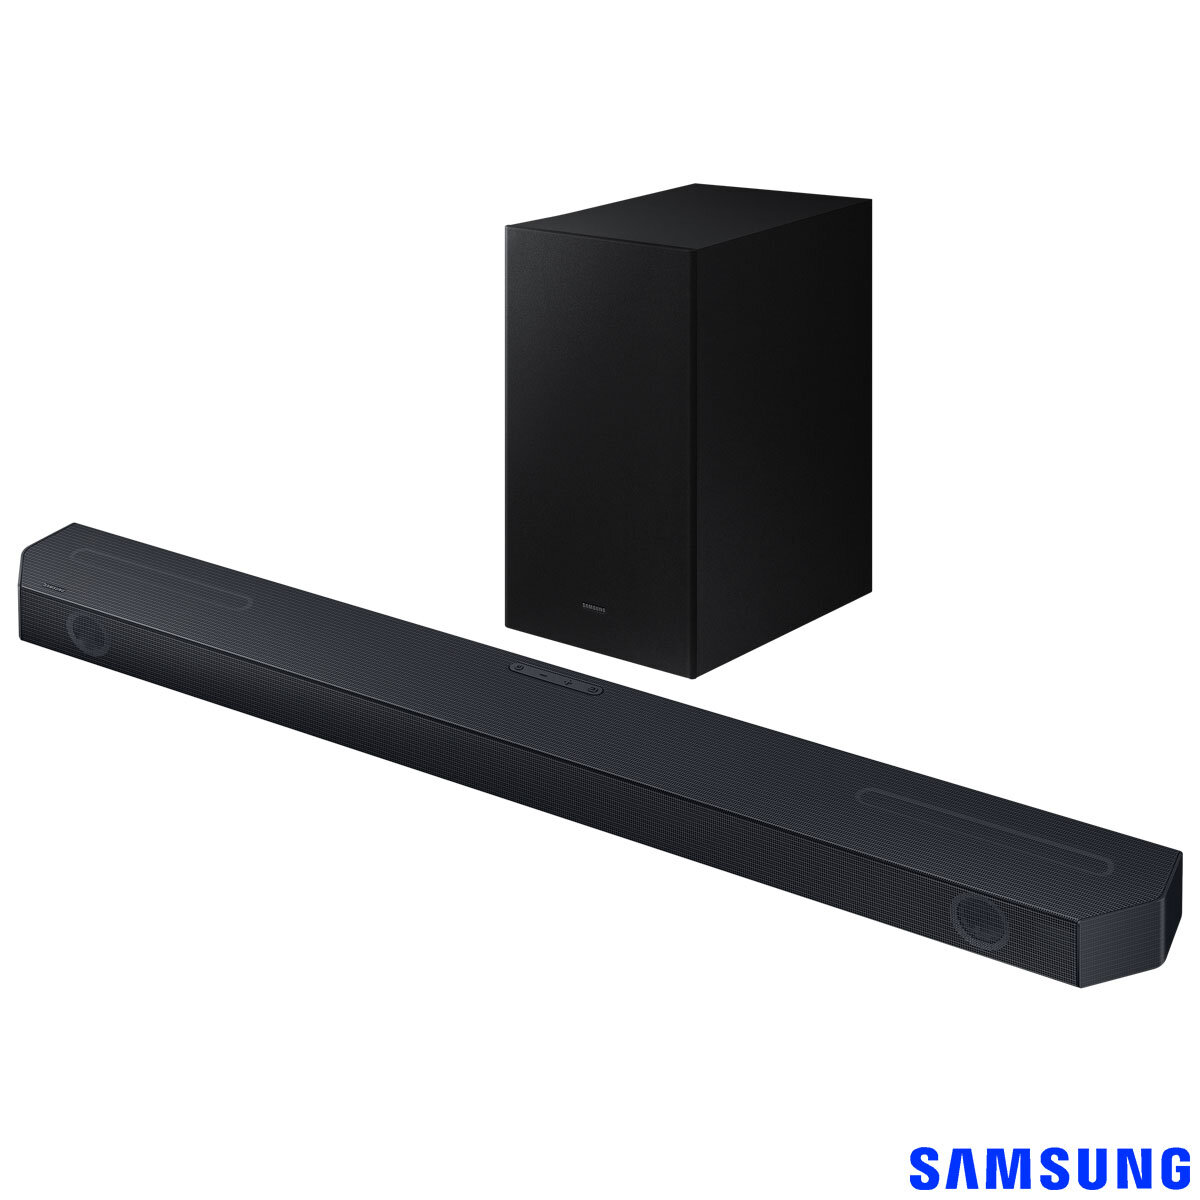 Buy SAMSUNG HW-Q600C/XU Soundbar Image at Costco.co.uk